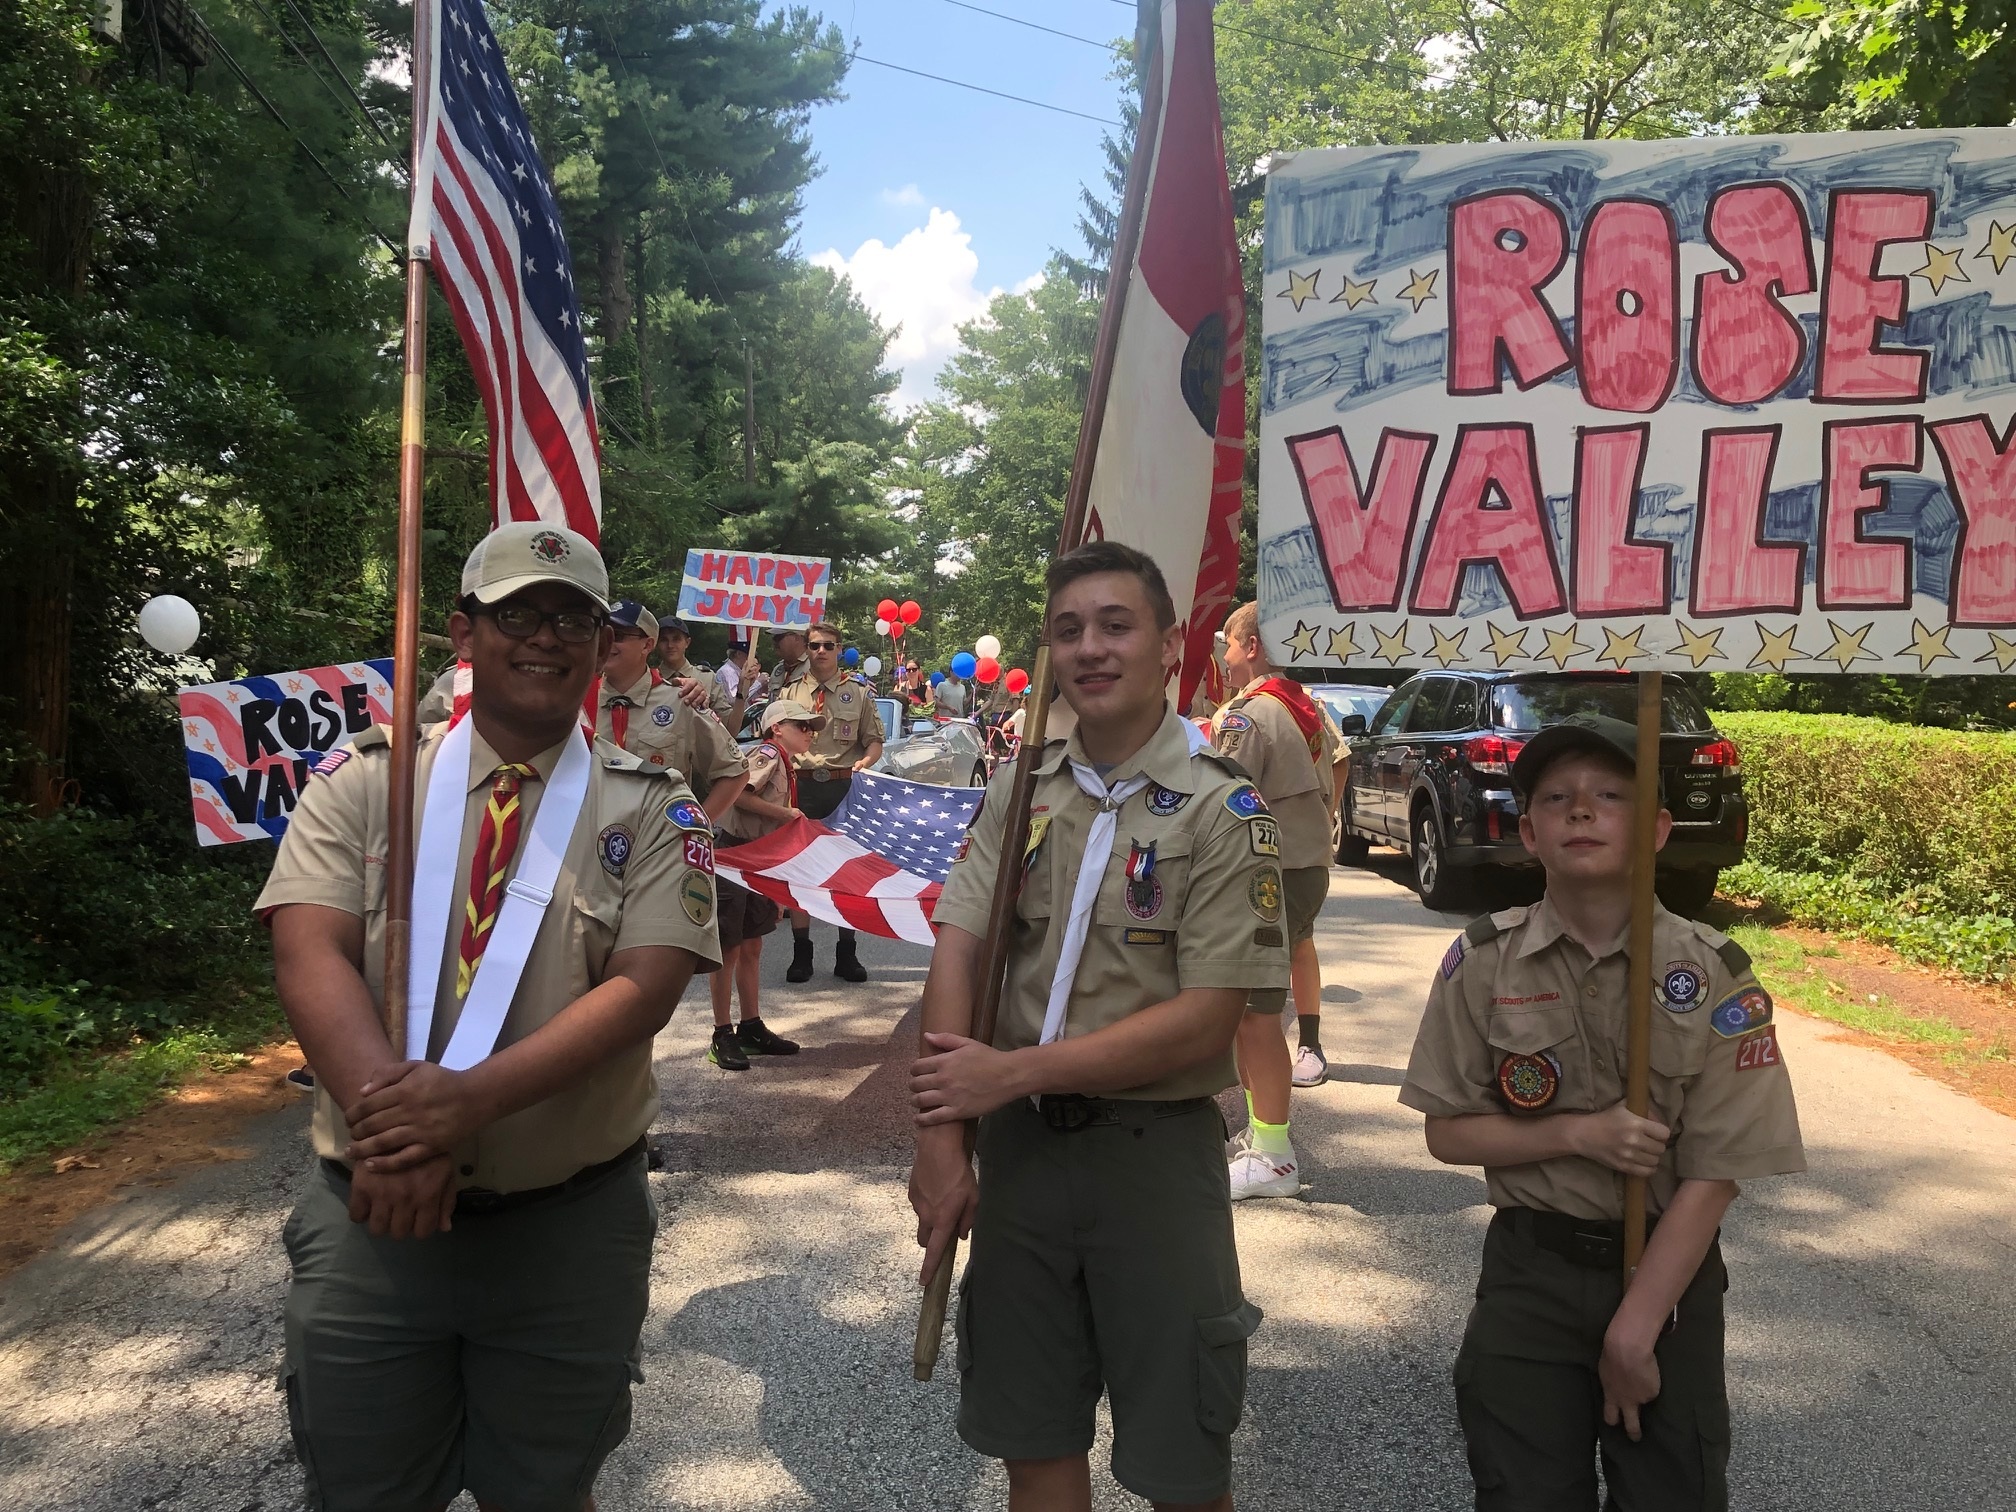  Members of troop 272 in Rose Valley 